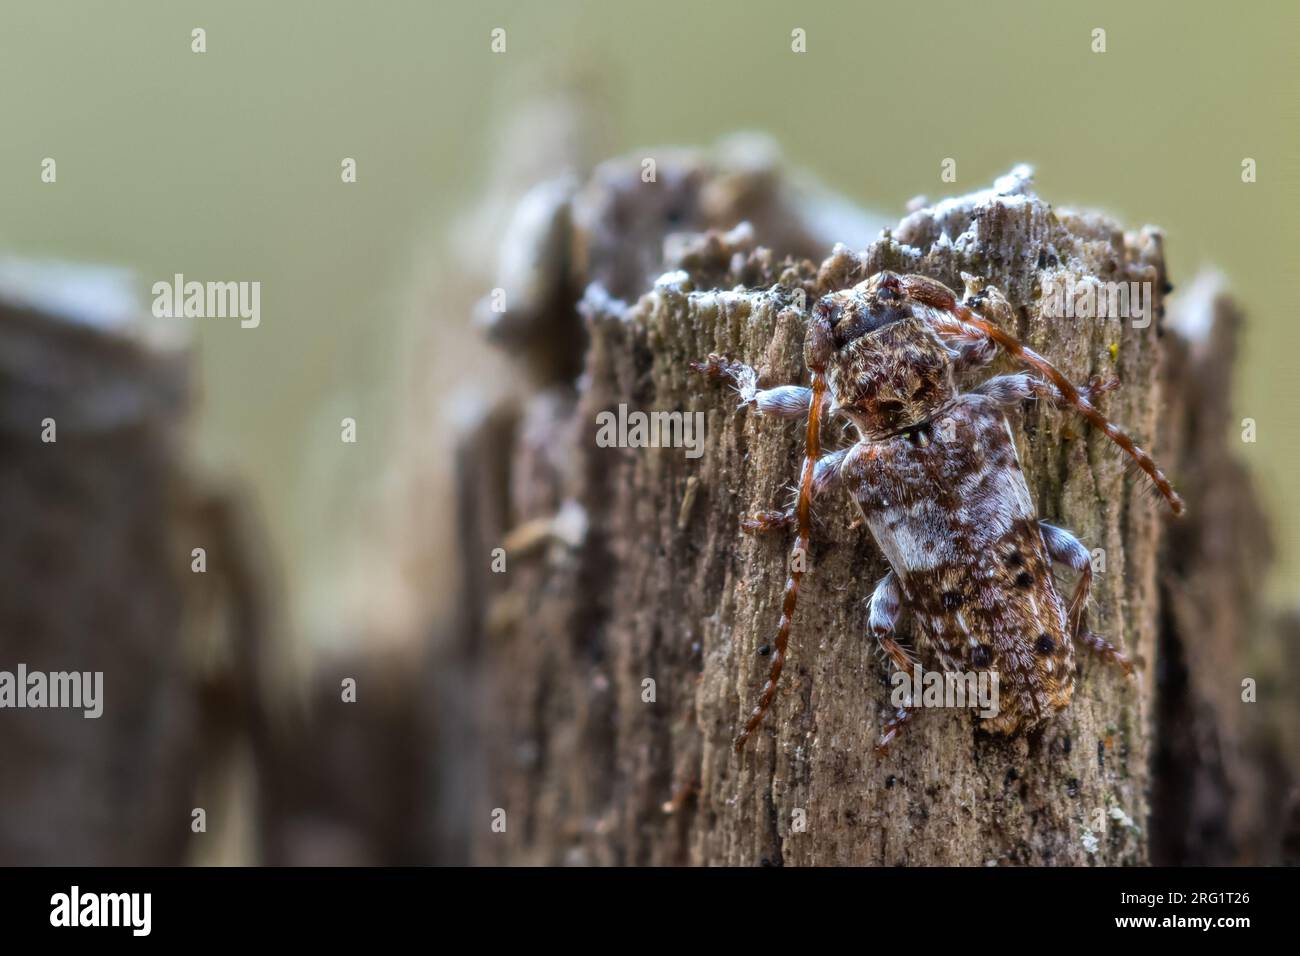 Pogonocherus fasciculatus - Gemeiner Wimperbock, Francia (Alsacia), imago Foto de stock